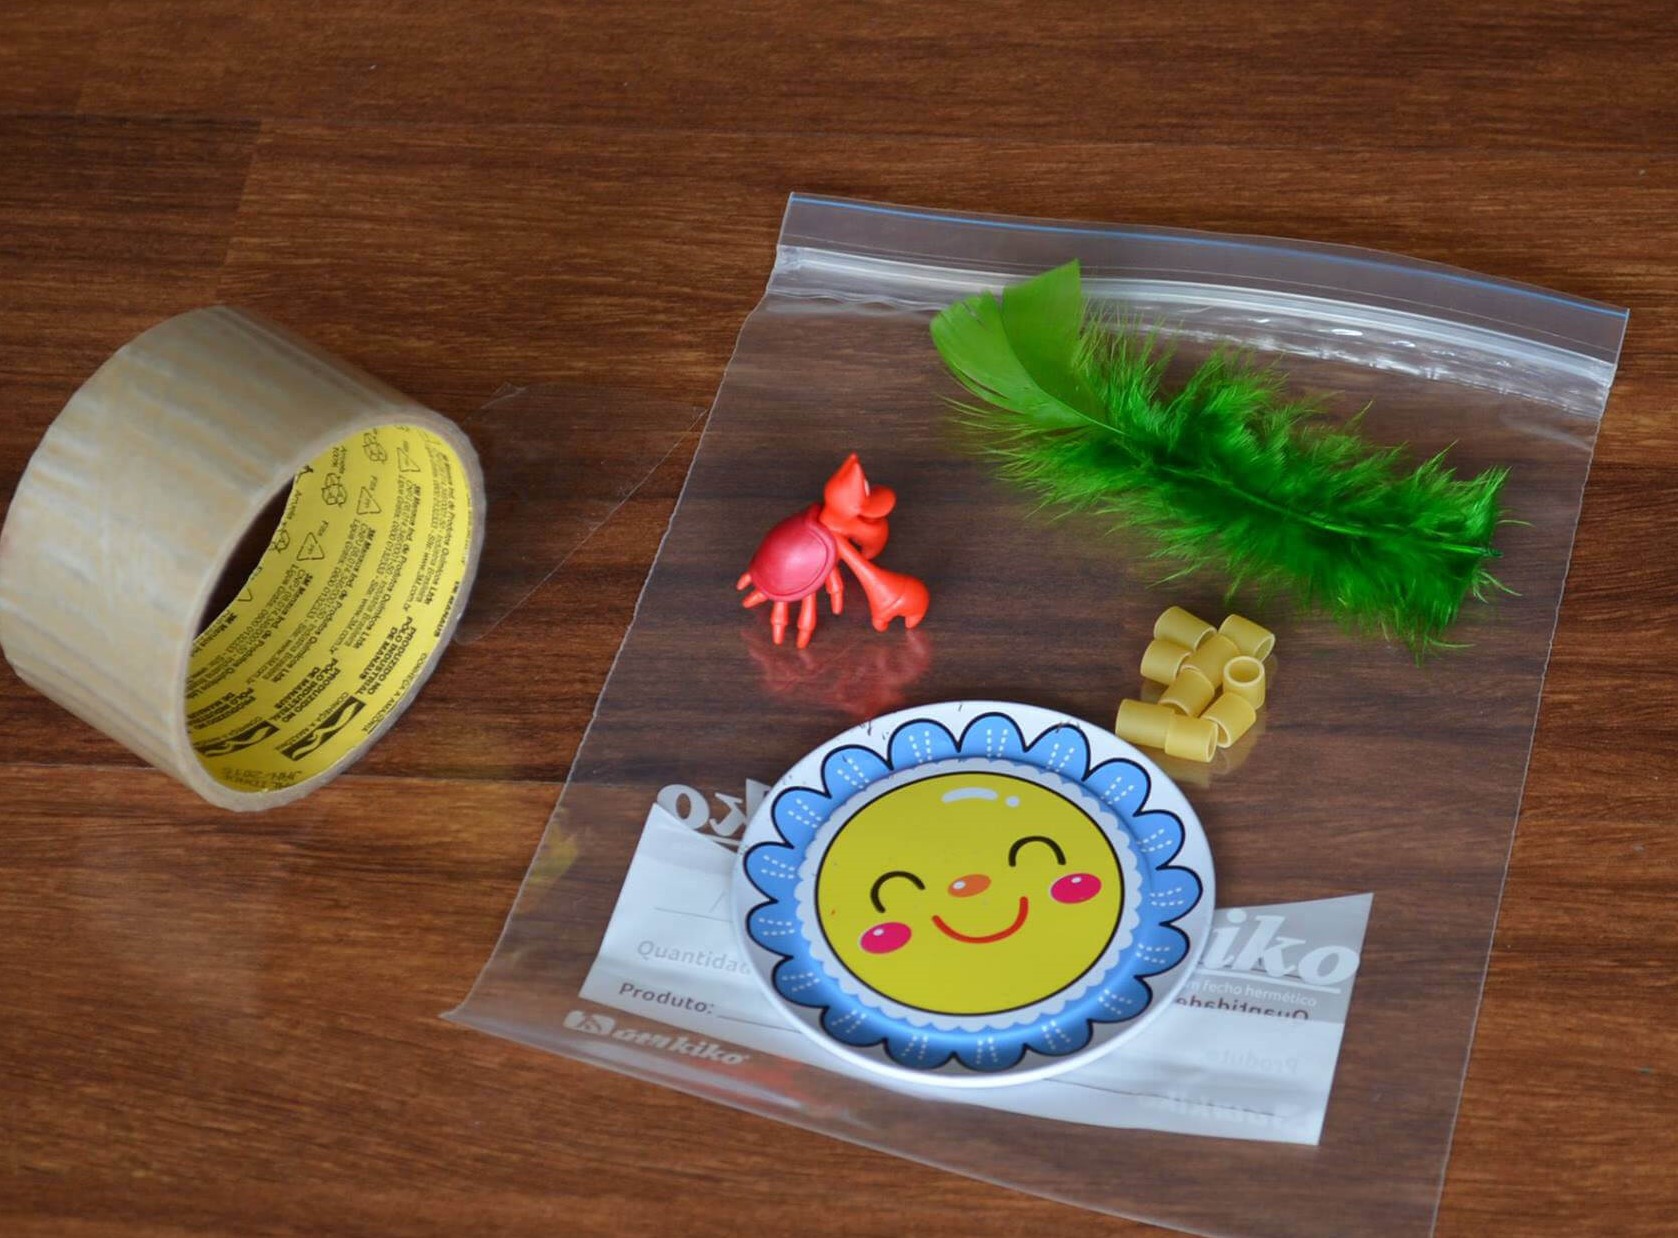 Foto de um saco plástico, com uma pena, pequenas peças quadras e um caranguejo de plástico. Ao lado, uma fita adesiva